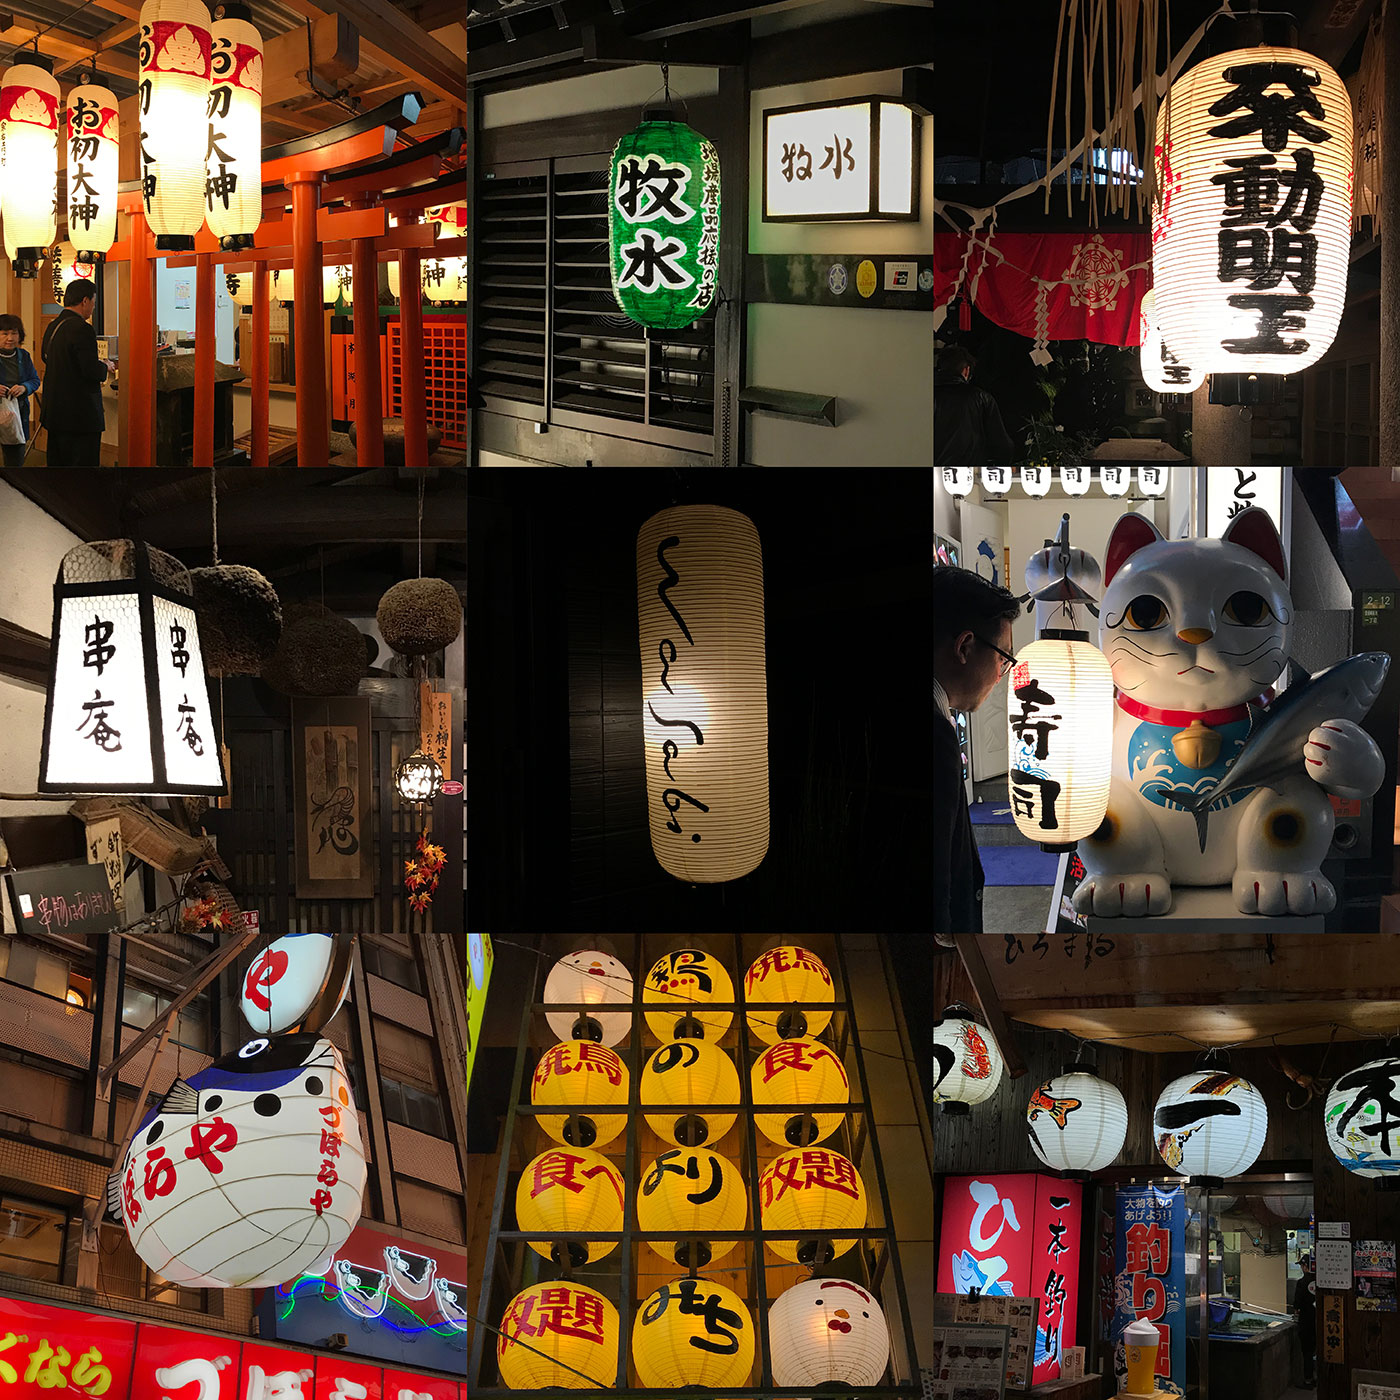 Lanterns of Japan